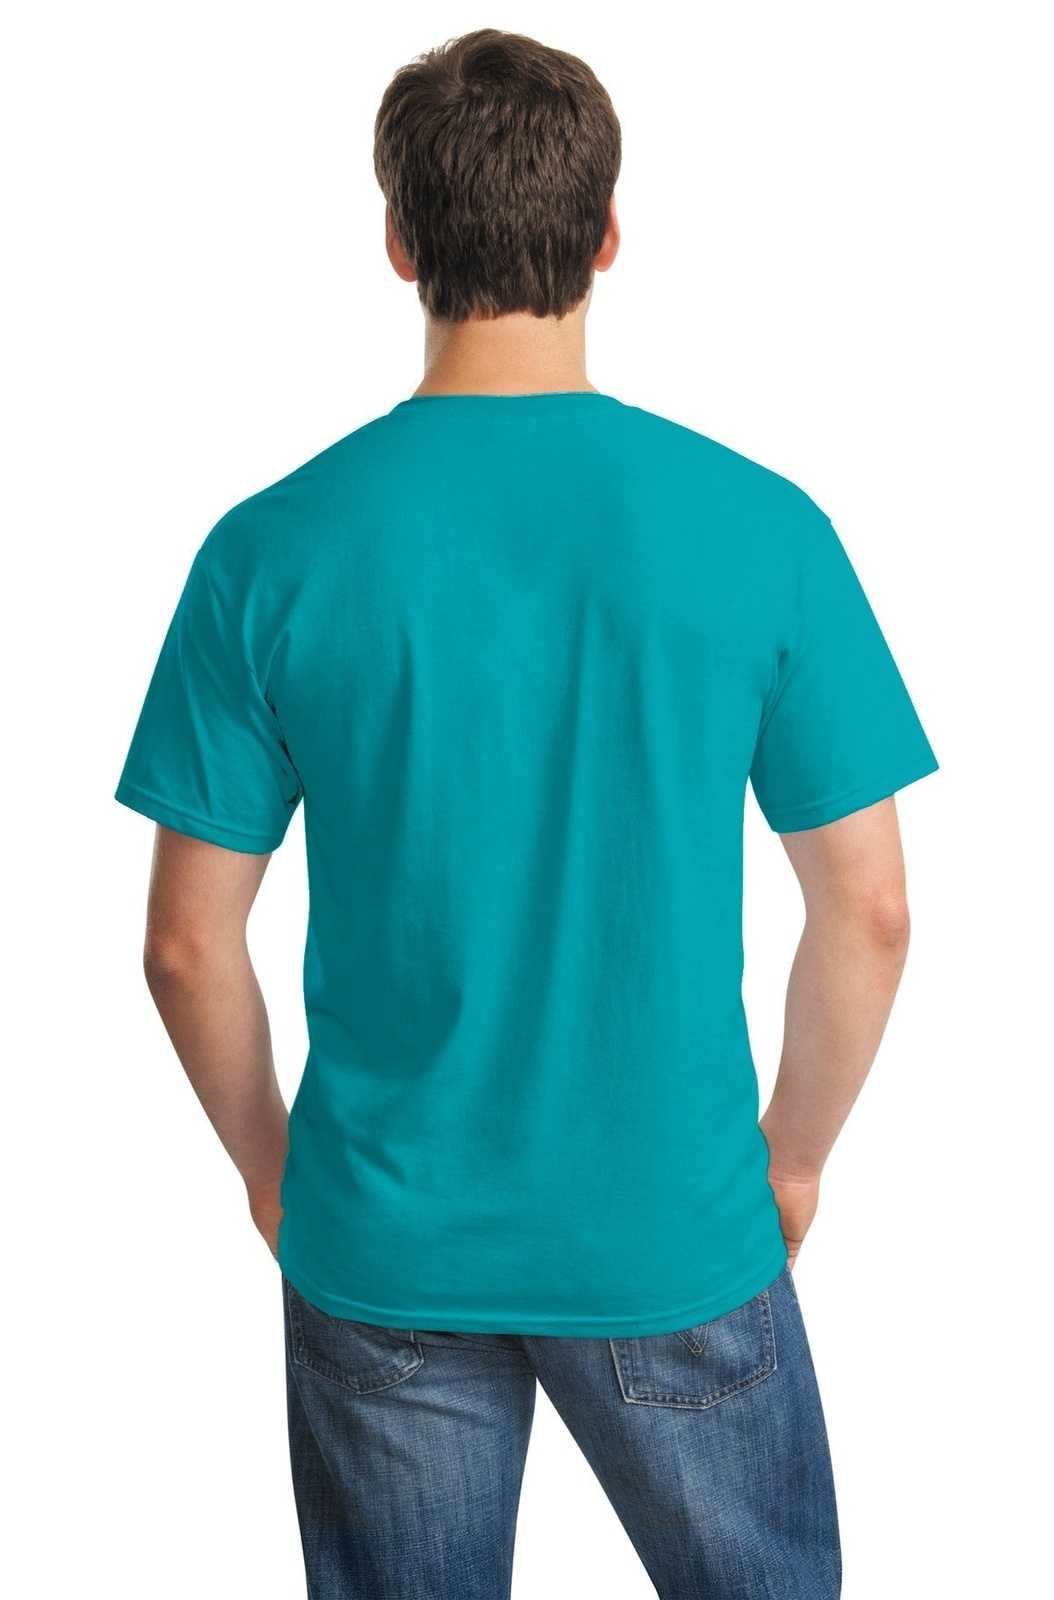 Gildan 5000 Heavy Cotton 100% Cotton T-Shirt - Tropical Blue - HIT a Double